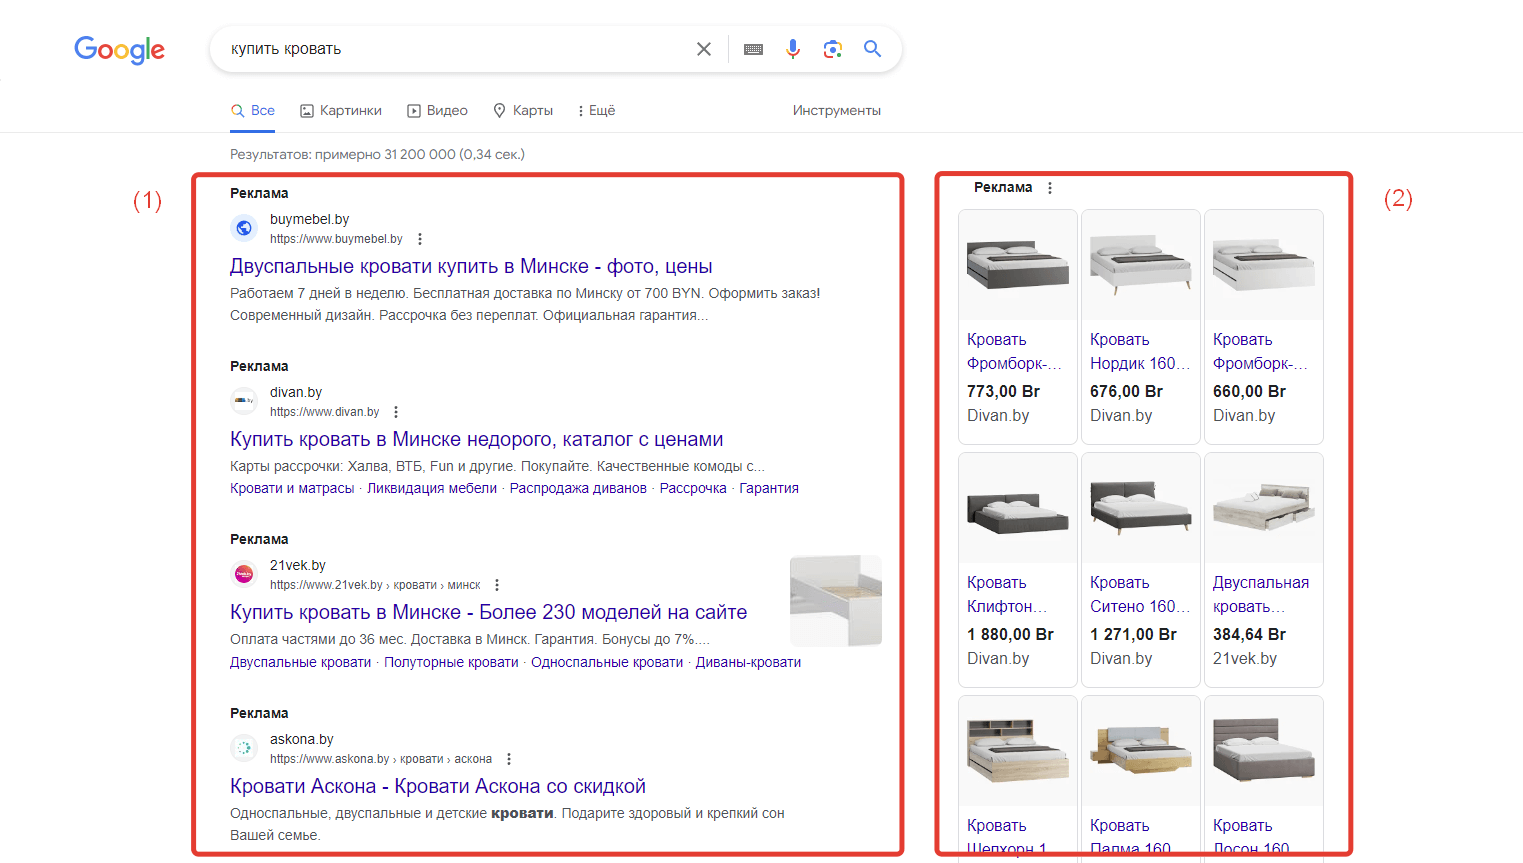 Примеры рекламы в результатах поиска Google: (1) контекстная реклама, (2) Google Shopping